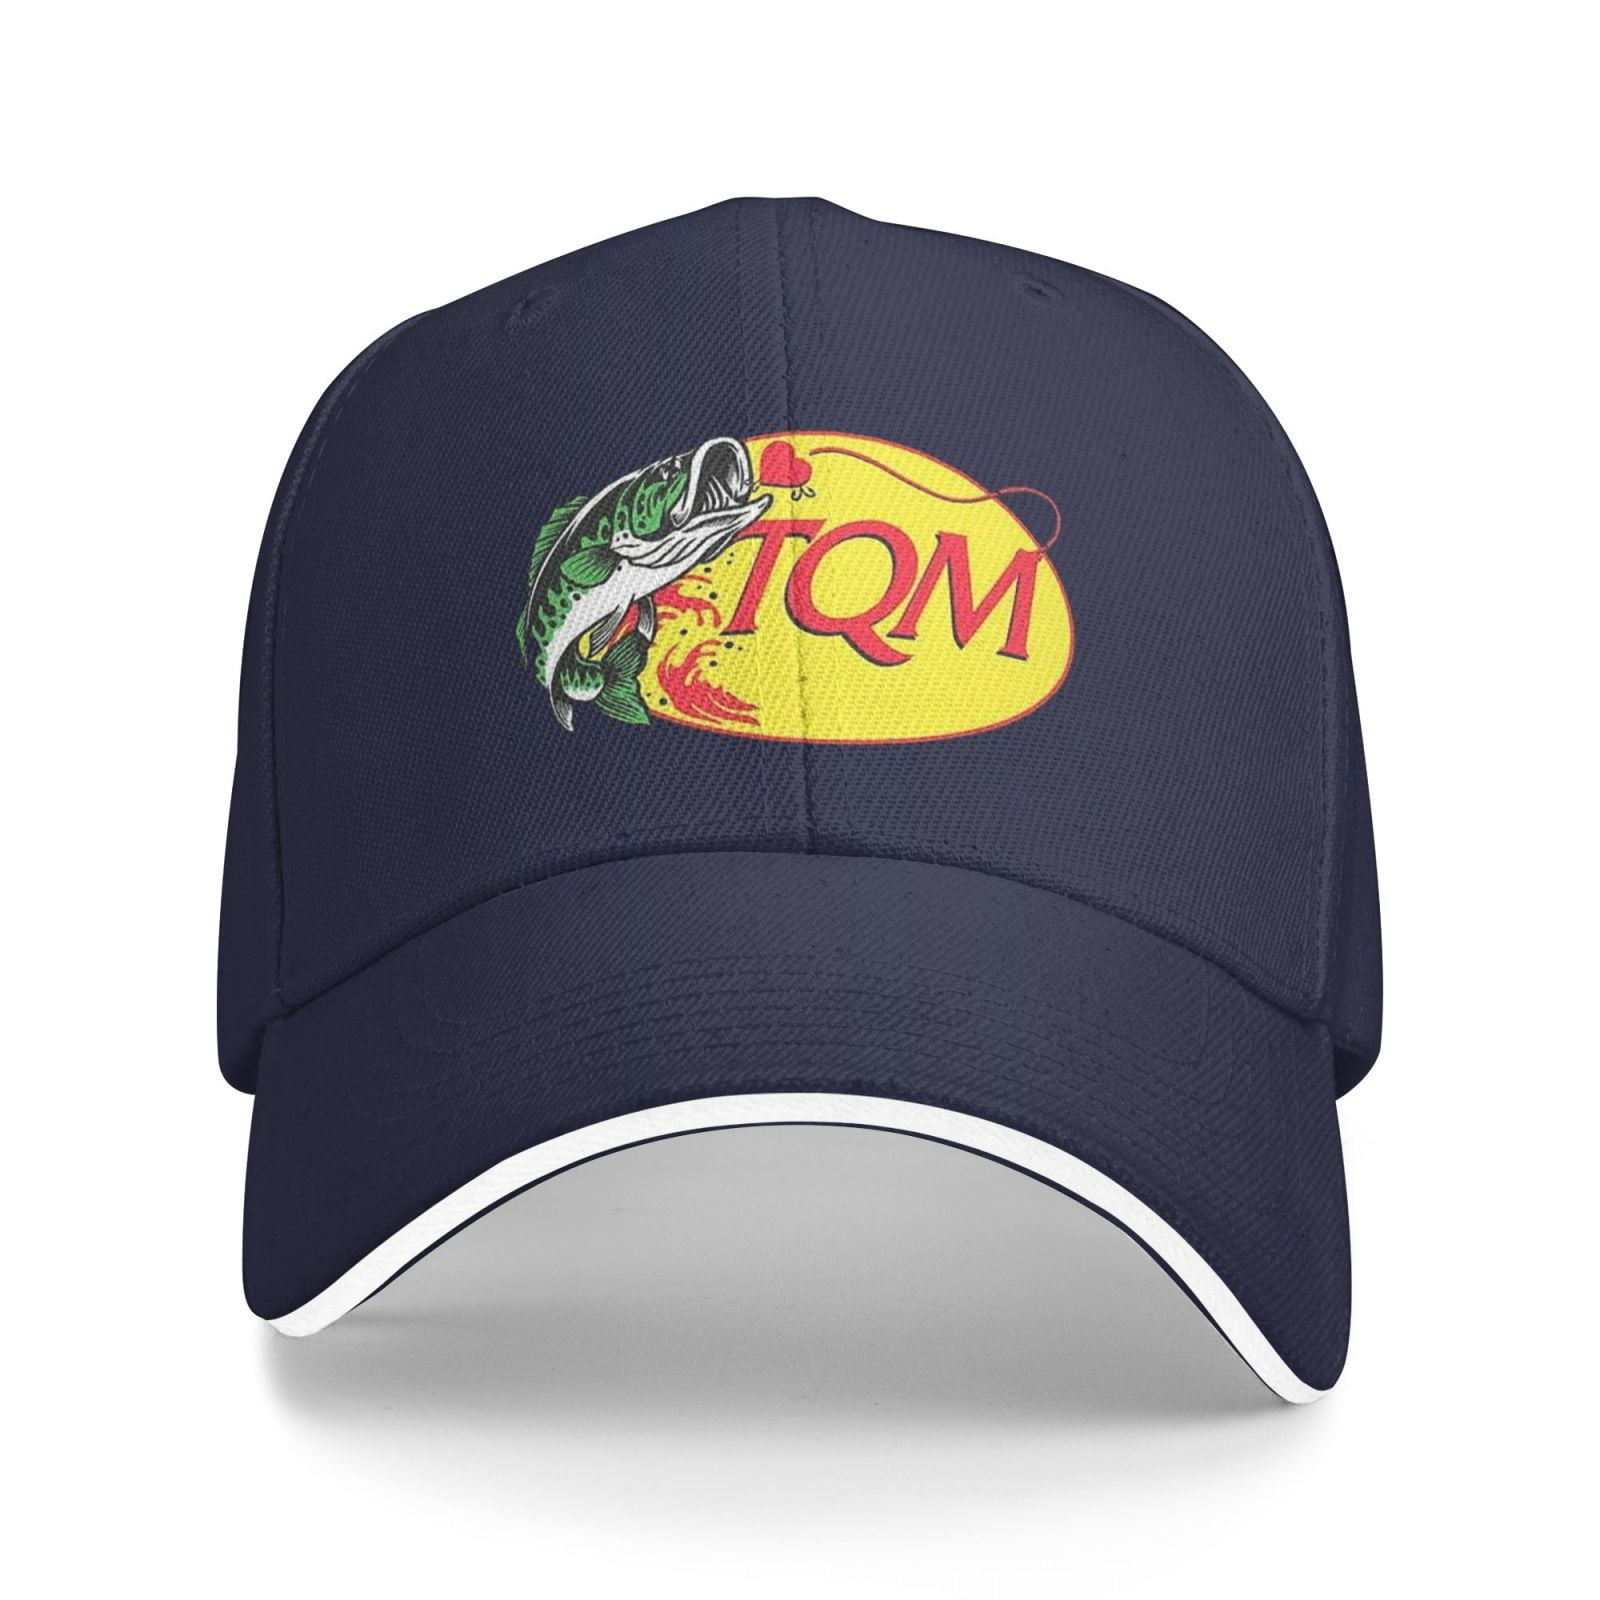 Tqm Caps Regida Fish Hat Hat Adjustable Funny Fashion casquette